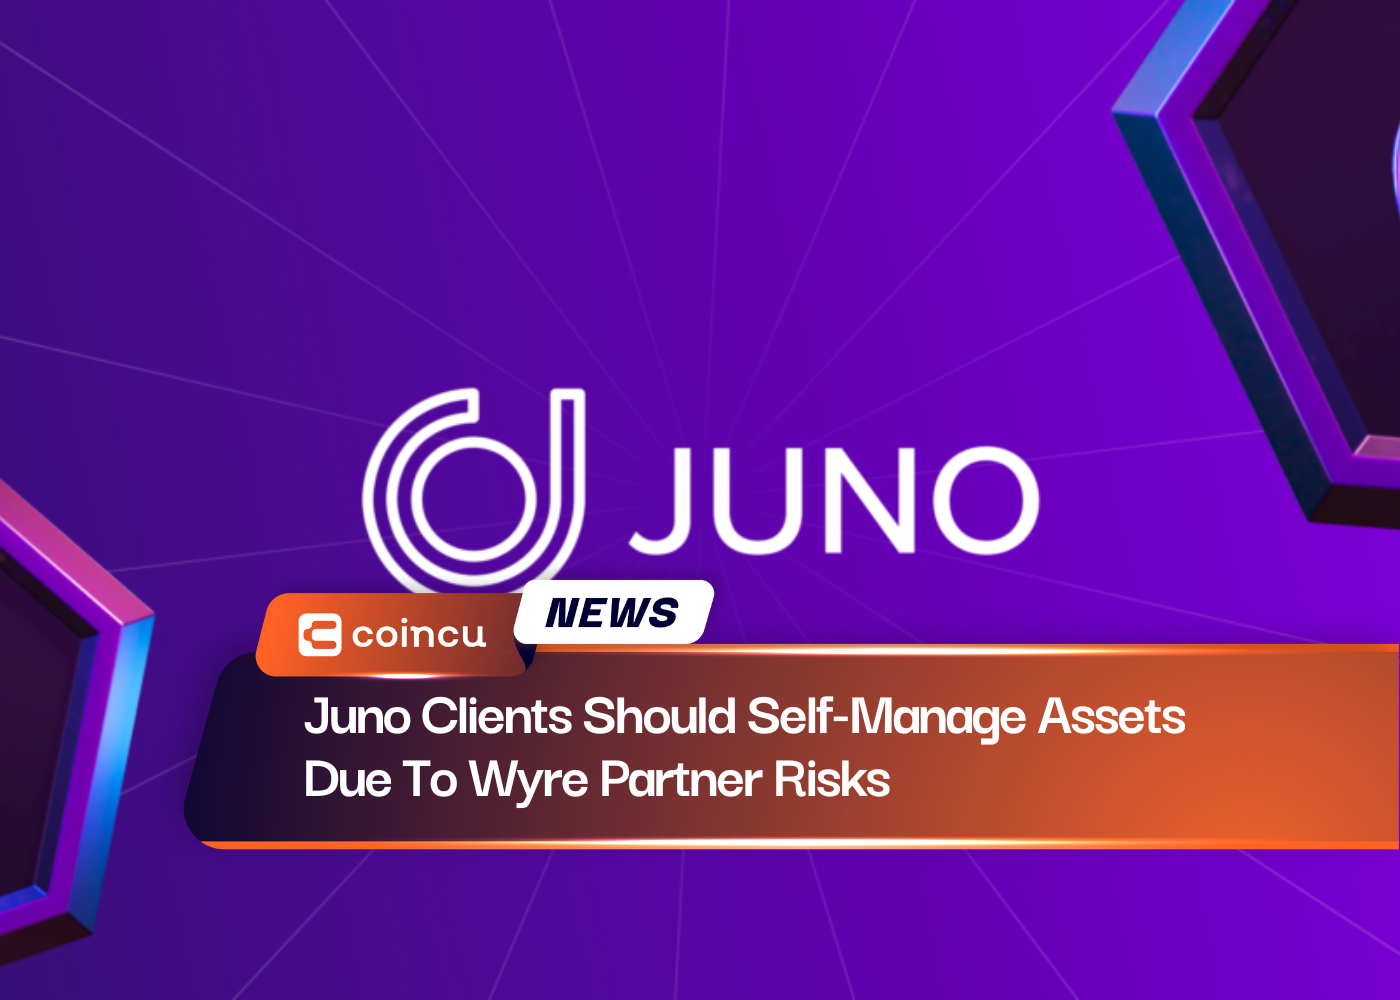 Les clients Juno devraient auto-gérer leurs actifs en raison des risques liés aux partenaires Wyre